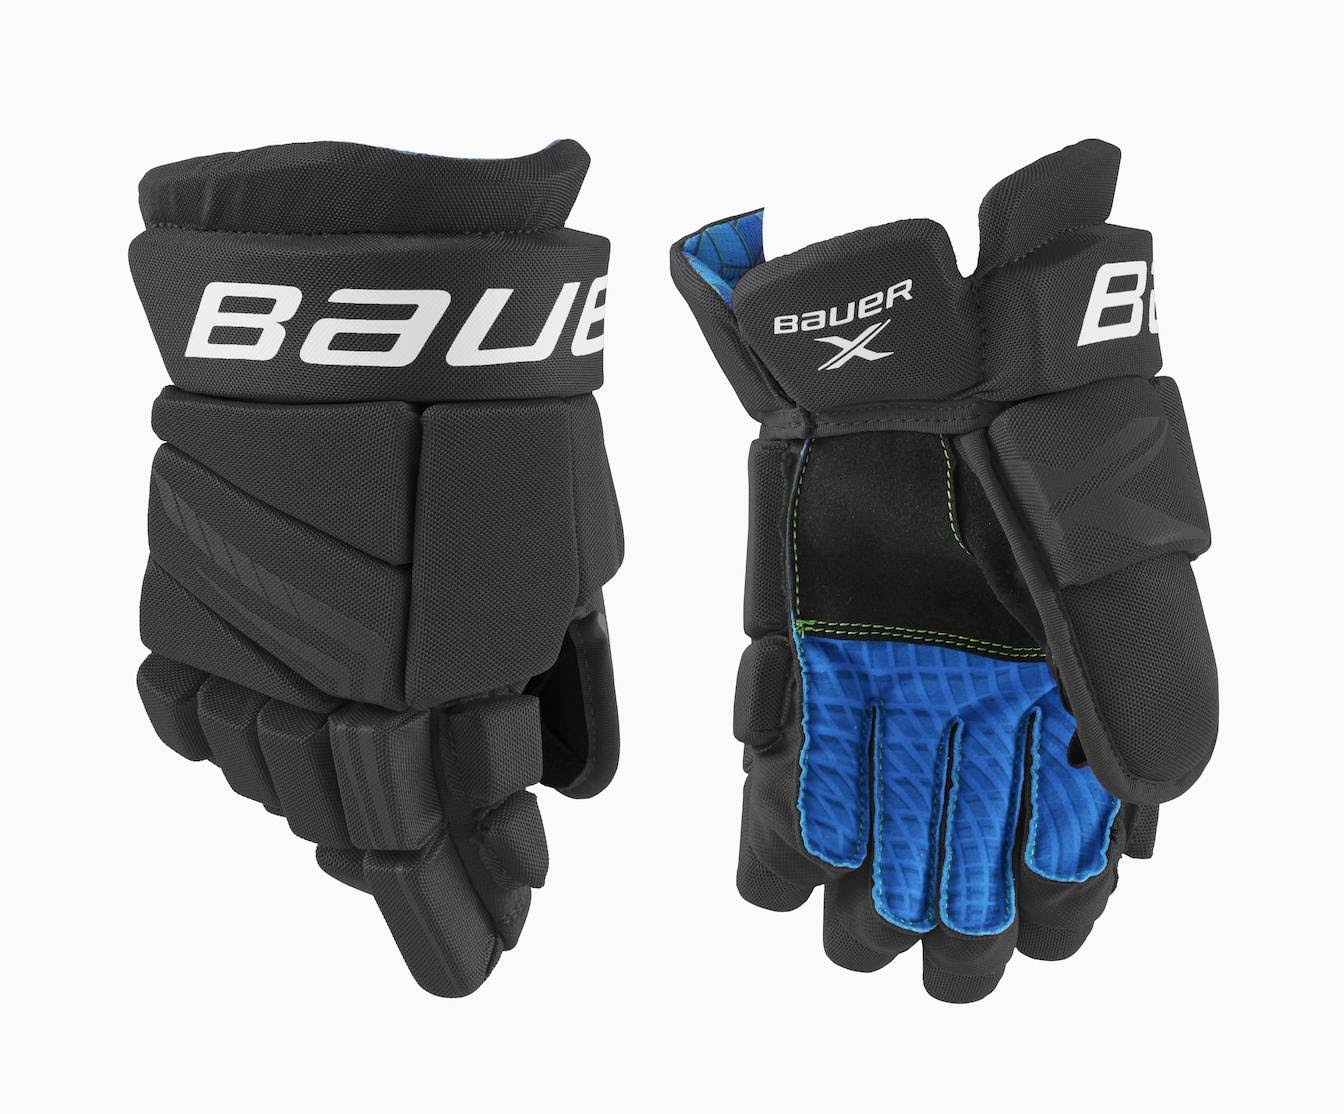 Bauer S21 x Hockey Gloves - Black - Junior, 10 Inch